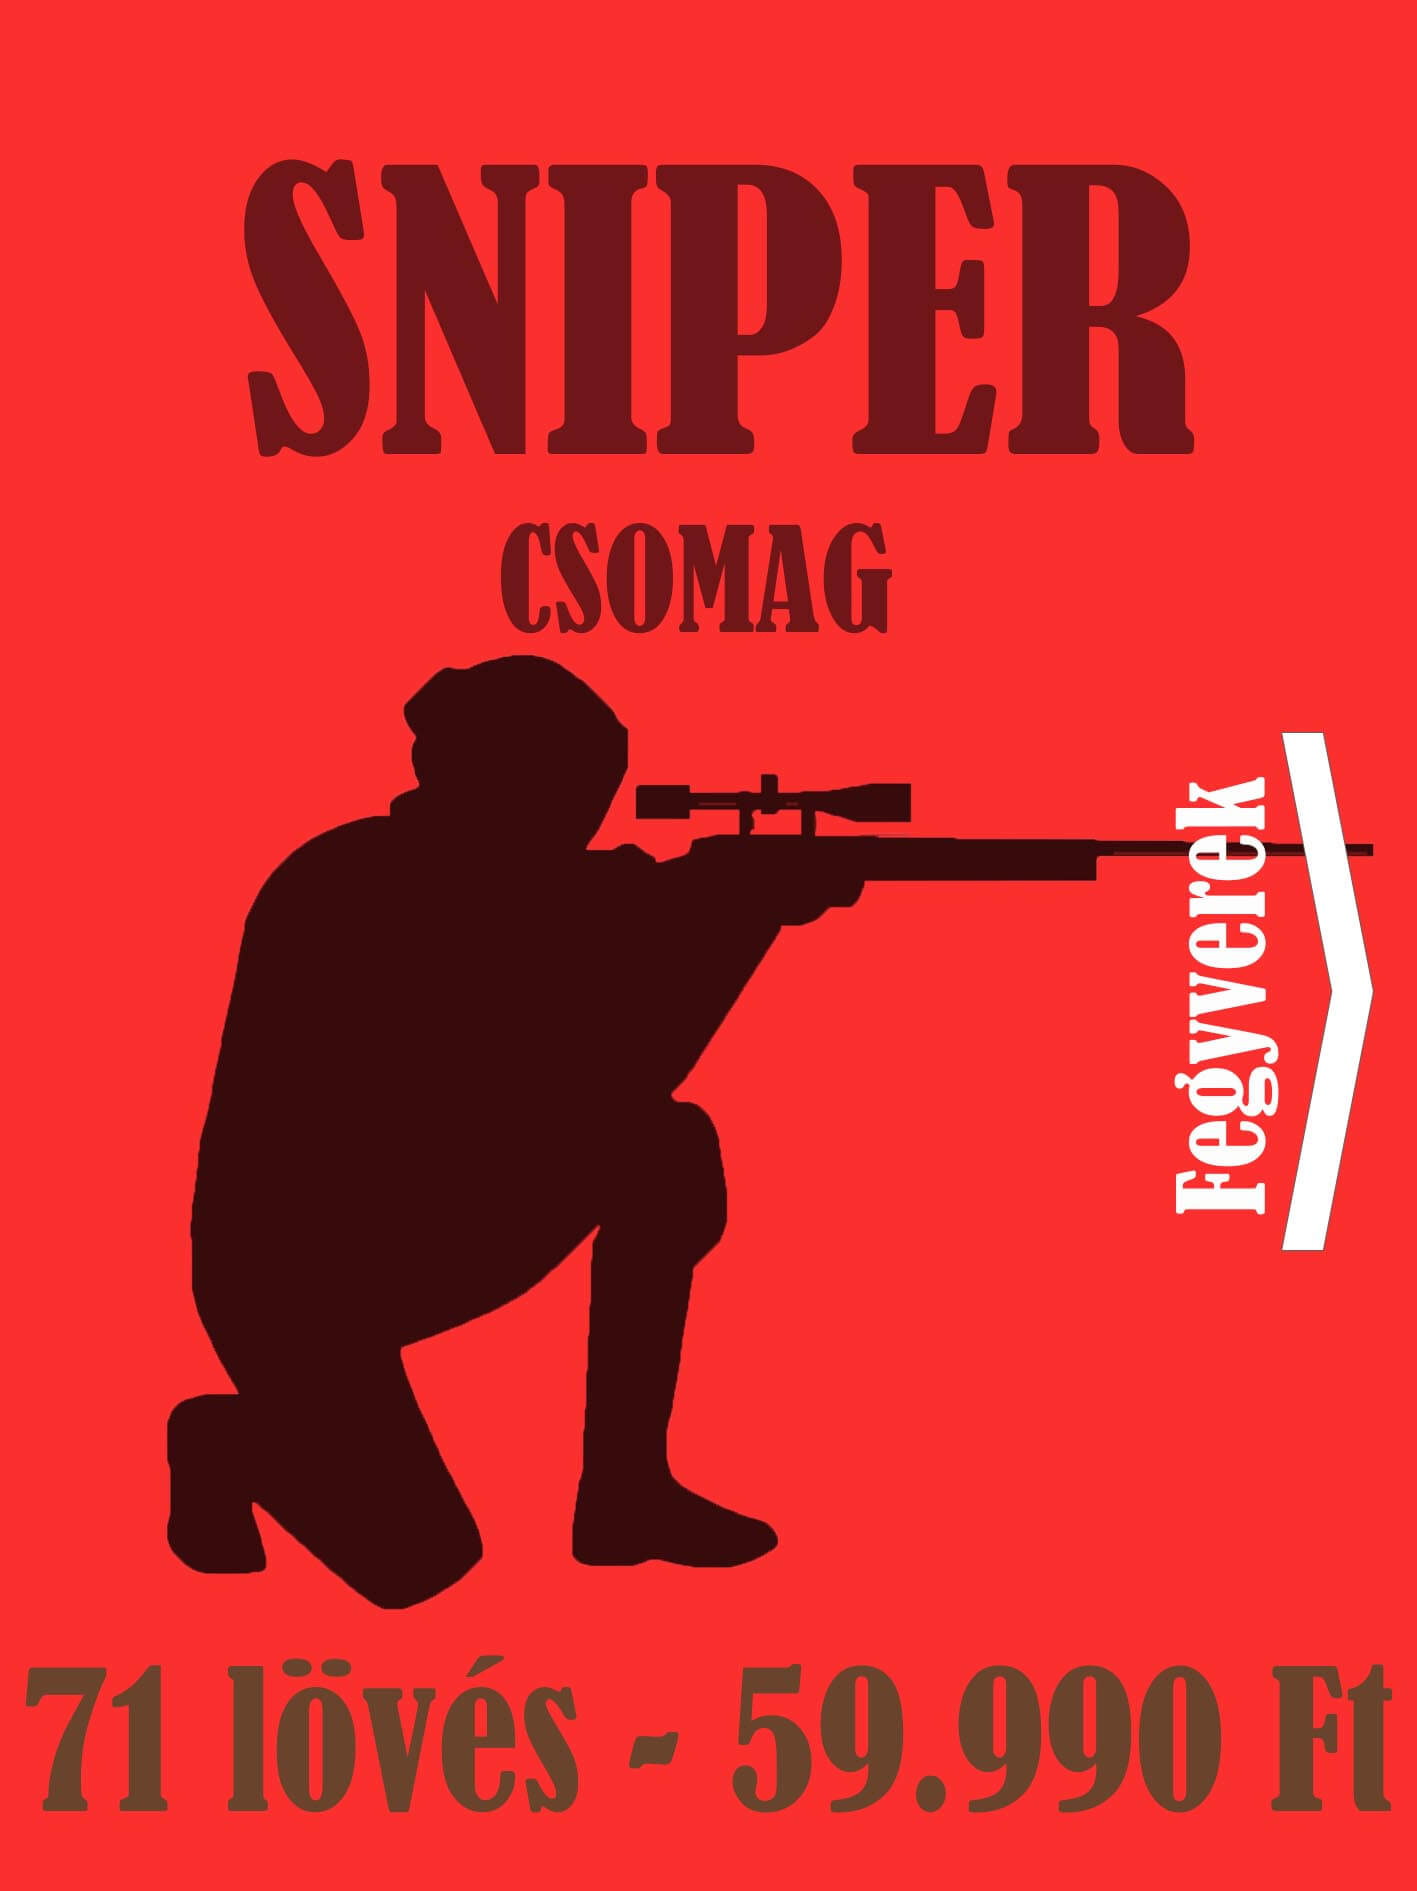 Élménylövészeti csomag - sniper